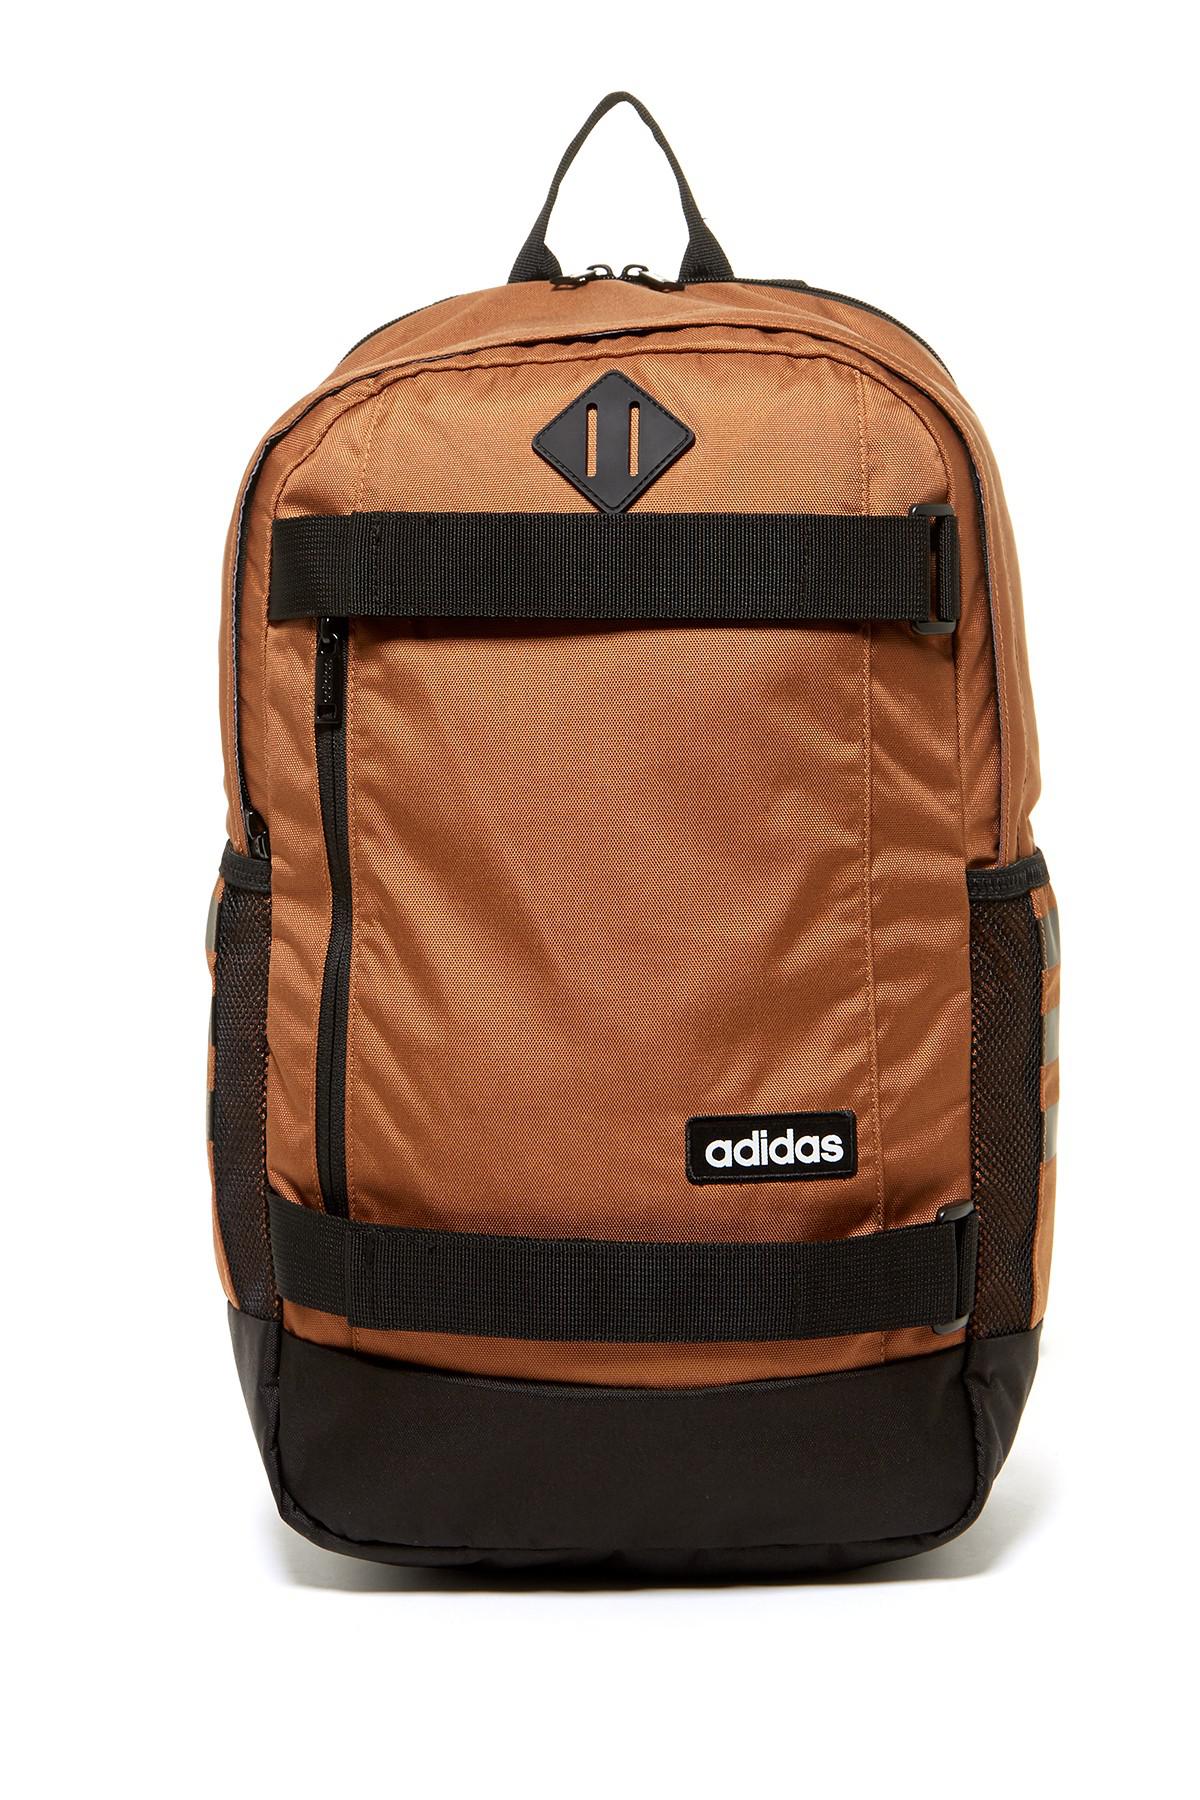 adidas brown backpack